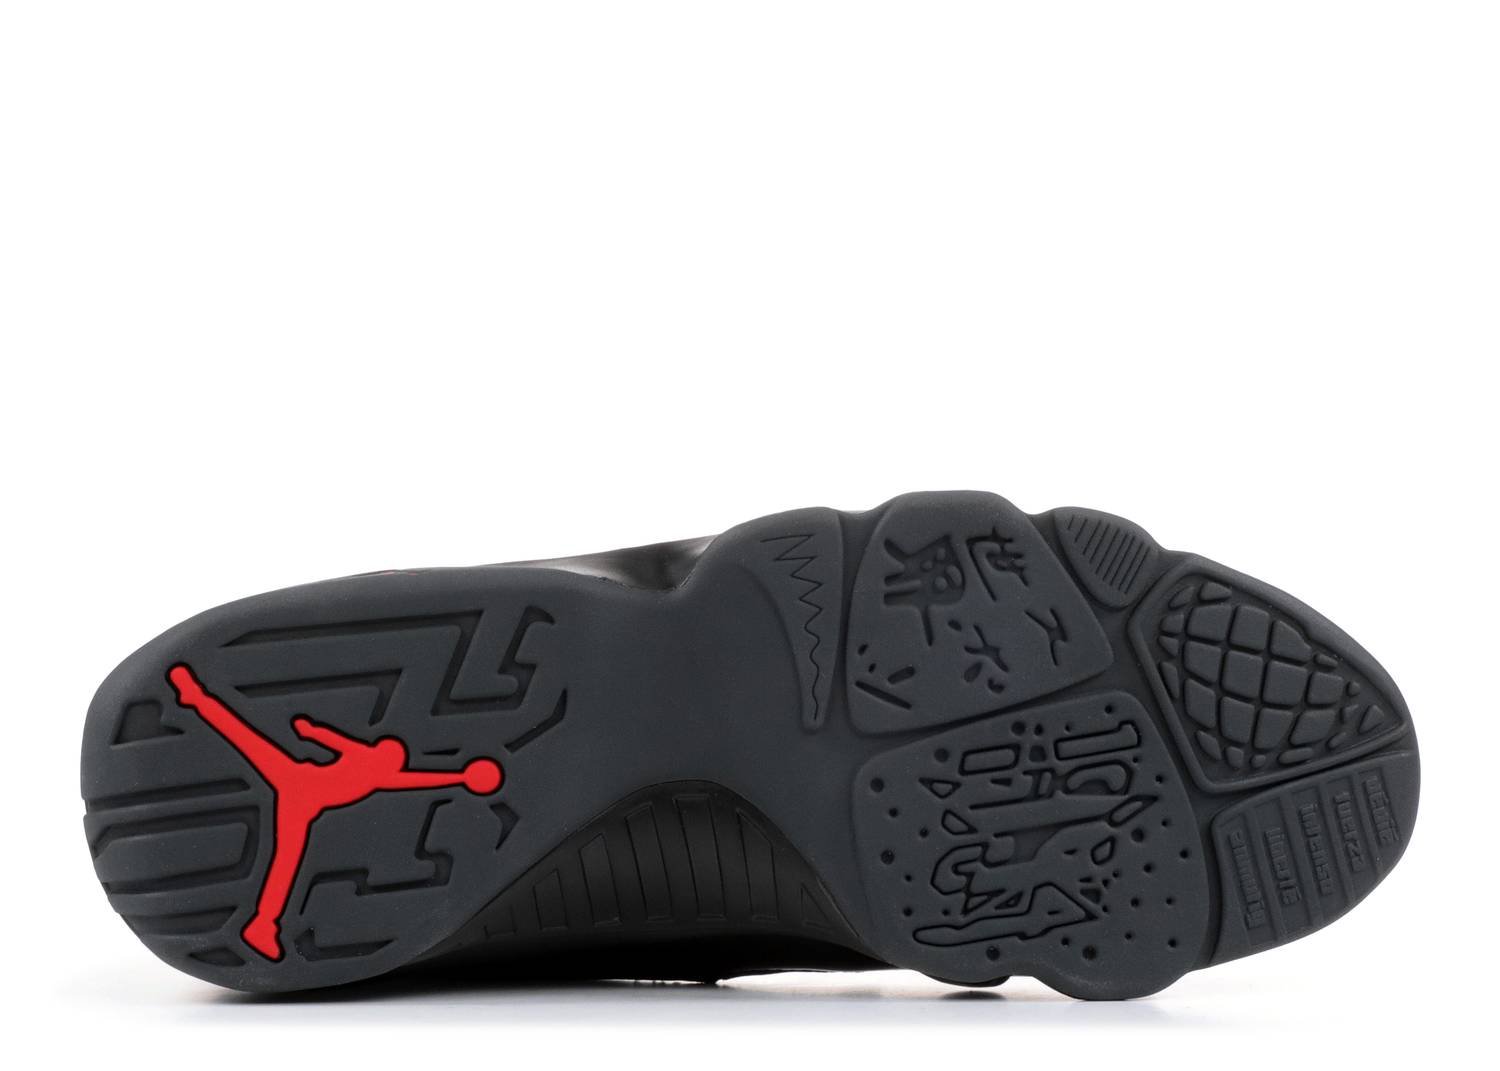 Image of Nike Retro Air Jordan 9 "Bred" Sz 10 